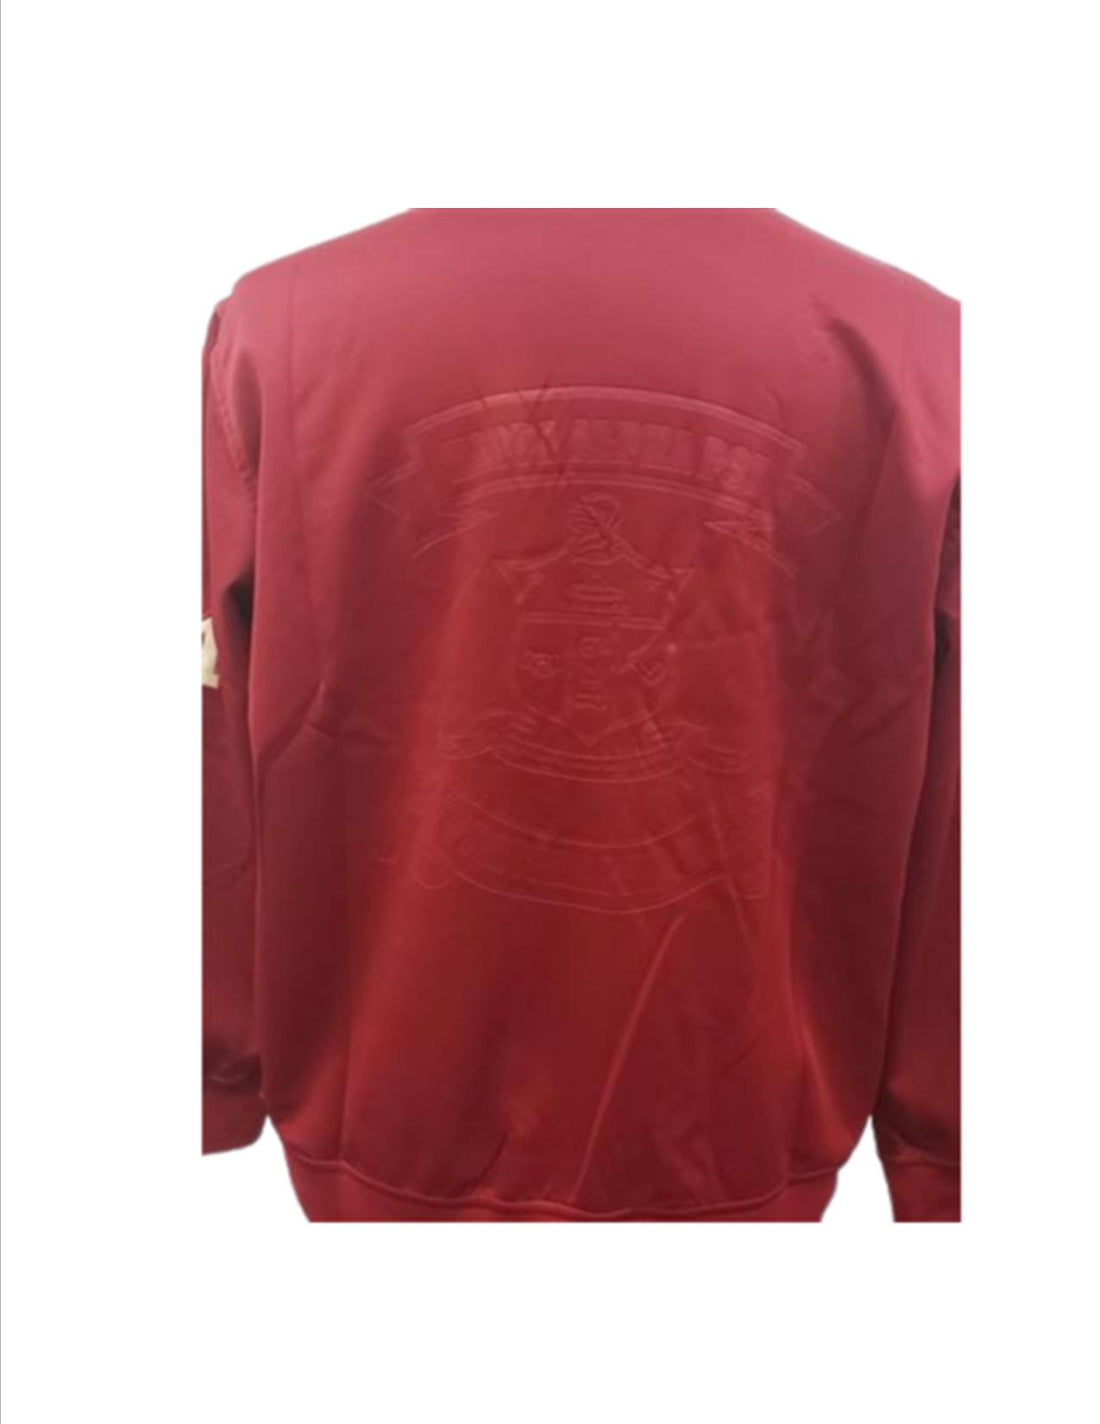 Kappa On-Court Men's Jacket (Crimson)